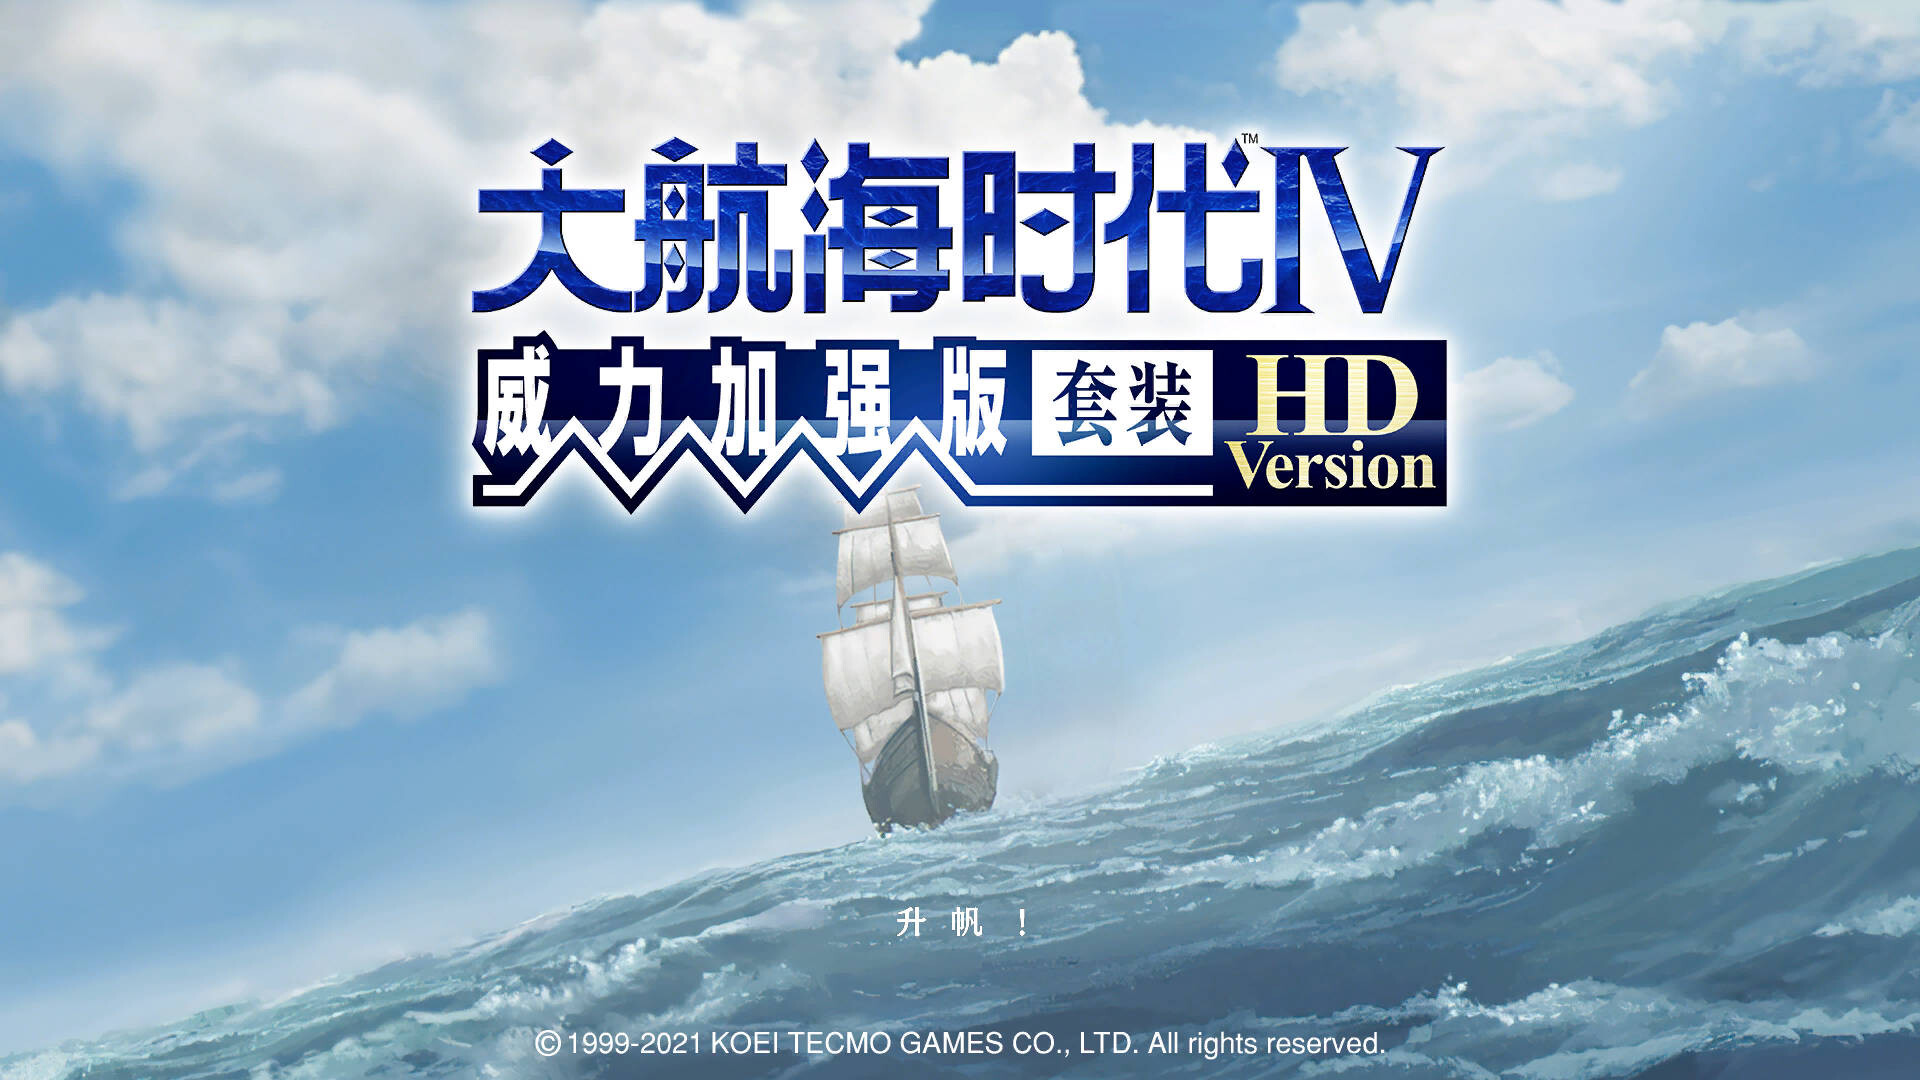 大航海时代Ⅳ 威力加强版套装HD Version (Win&Mac)中文免安装版-CSDN博客